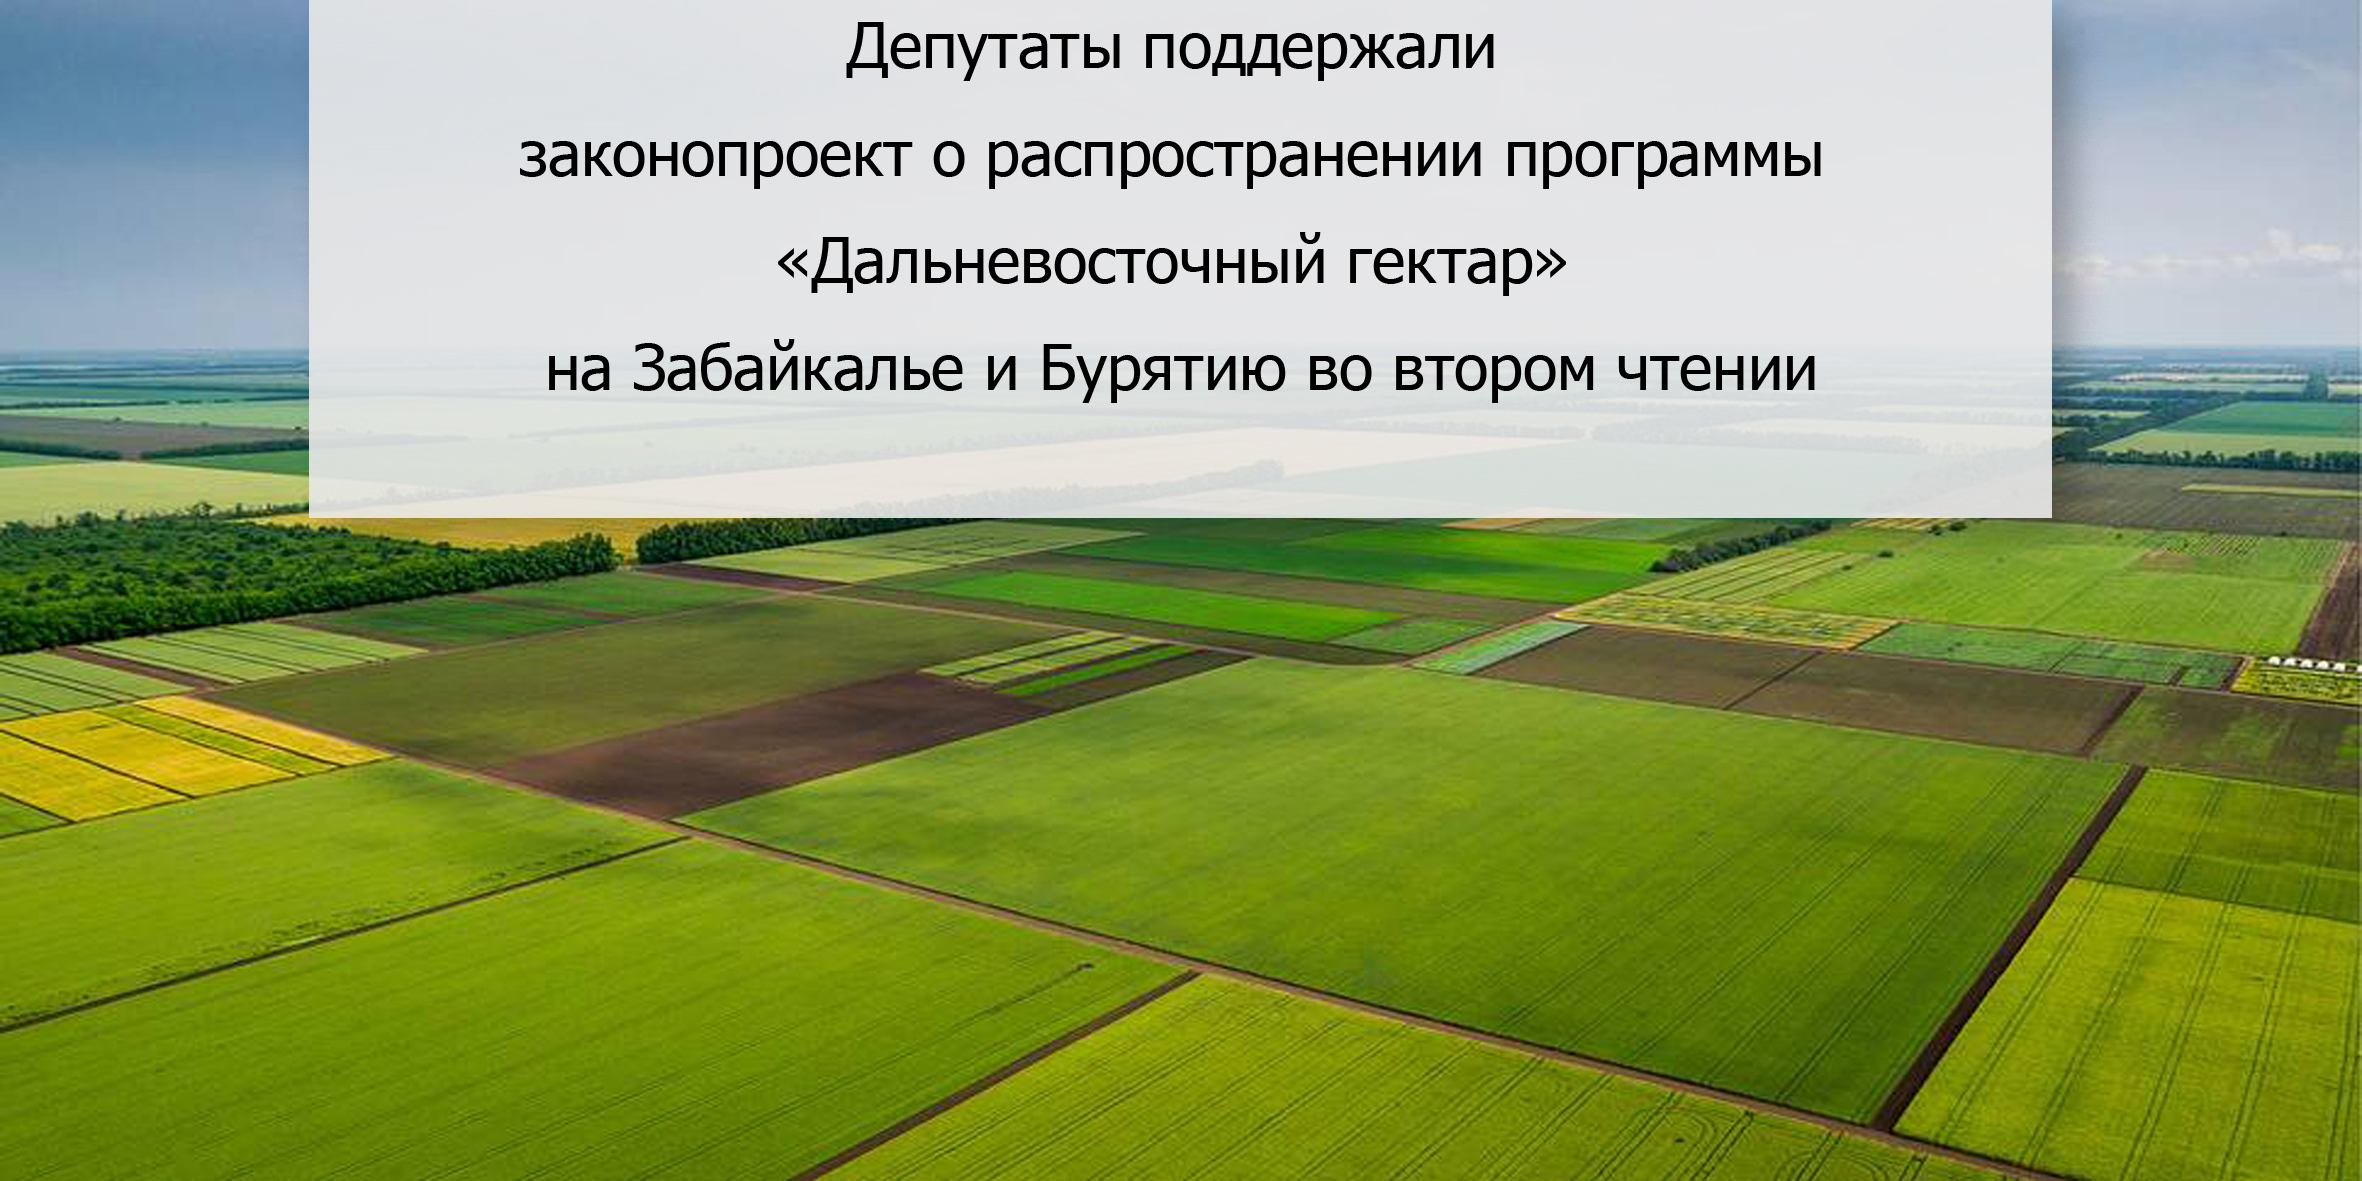 Депутаты поддержали законопроект о распространении программы «Дальневосточный гектар» на Забайкалье и Бурятию во втором чтении